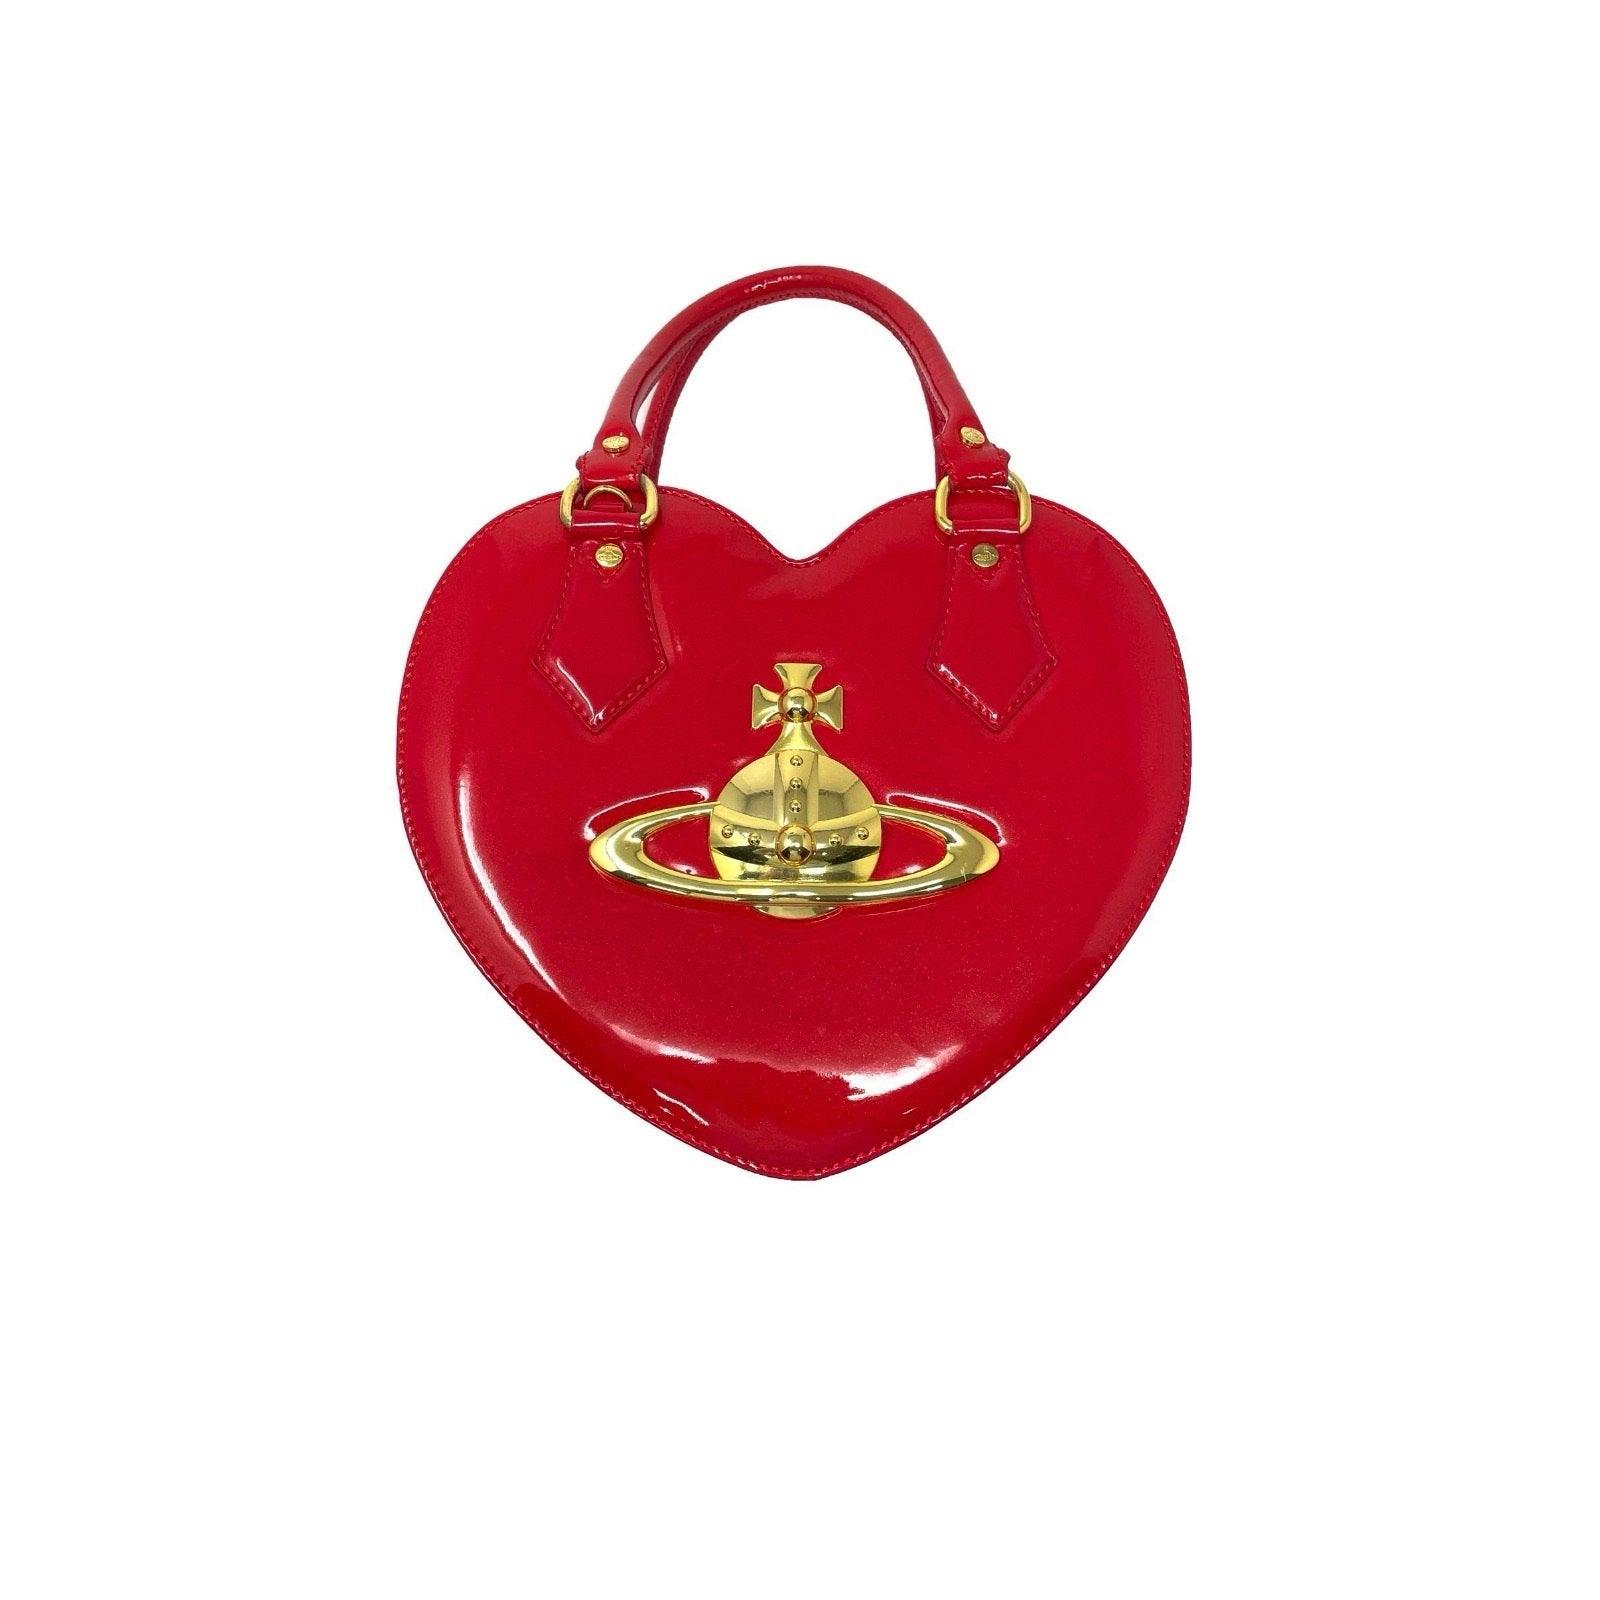 Vivienne Westwood Heart Bag - For Sale on 1stDibs  vivienne westwood red heart  bag, vivienne westwood heart purse, heart vivienne westwood bag